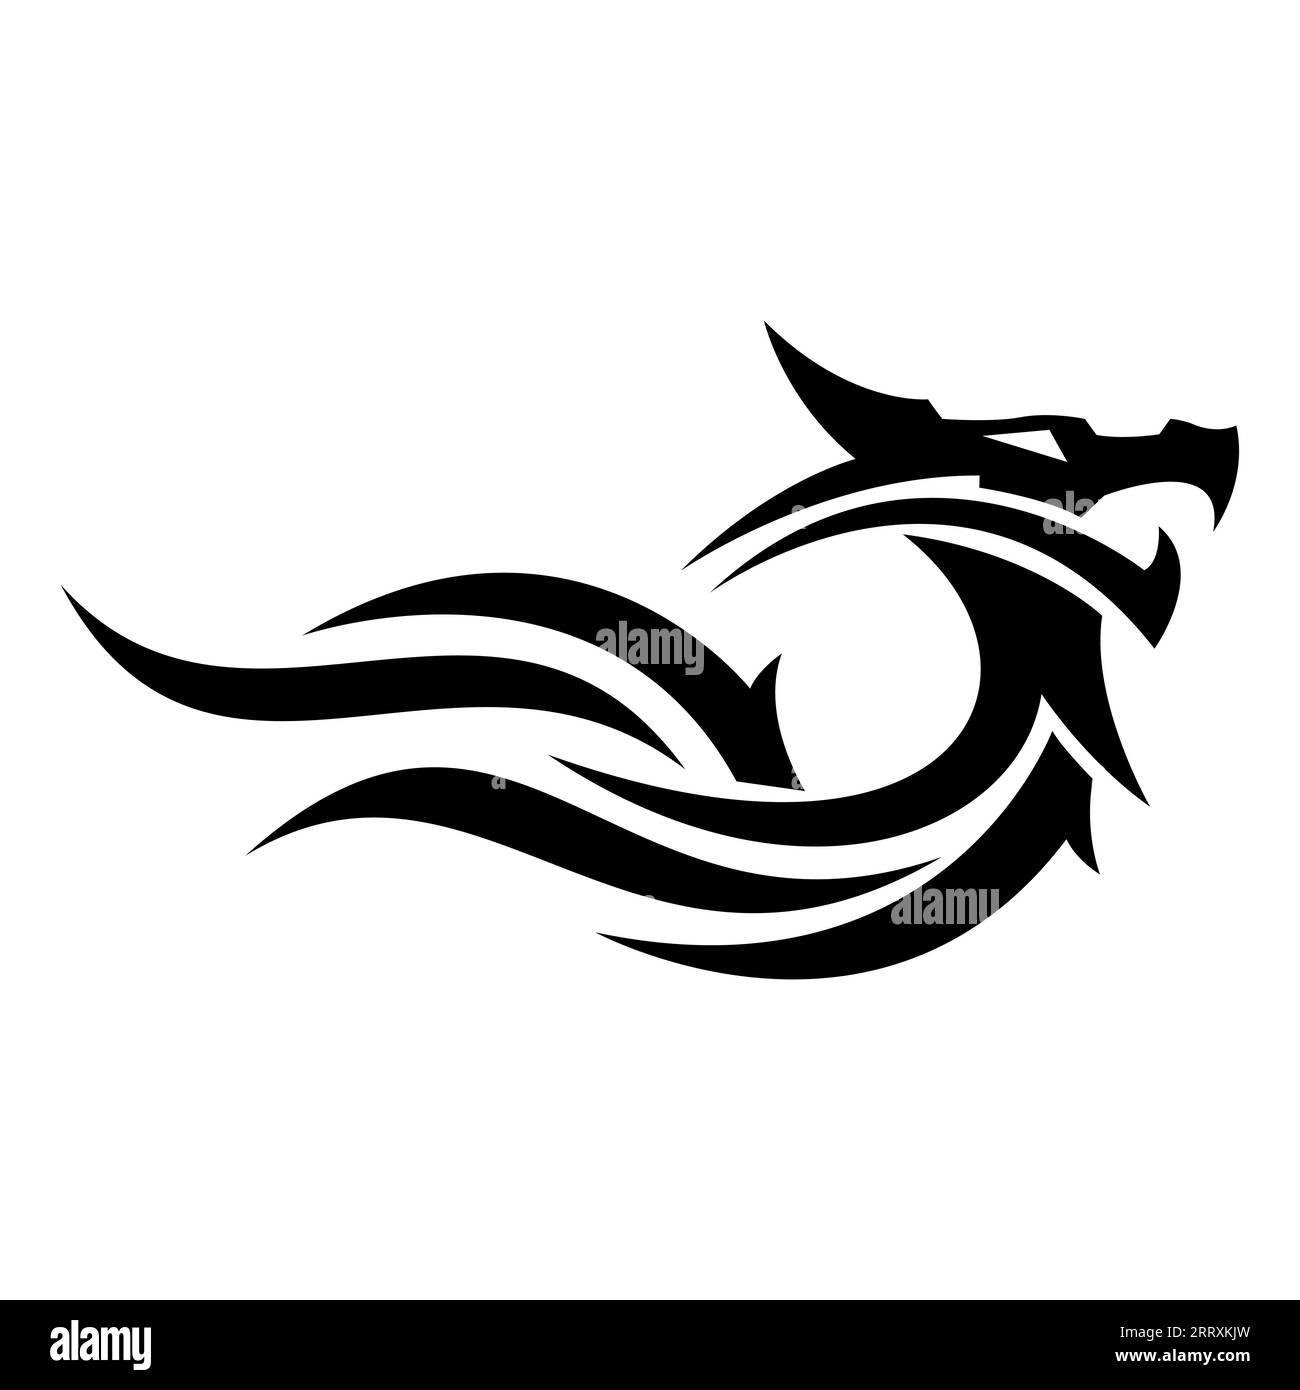 vecteur de conception de logo dragon flame Illustration de Vecteur